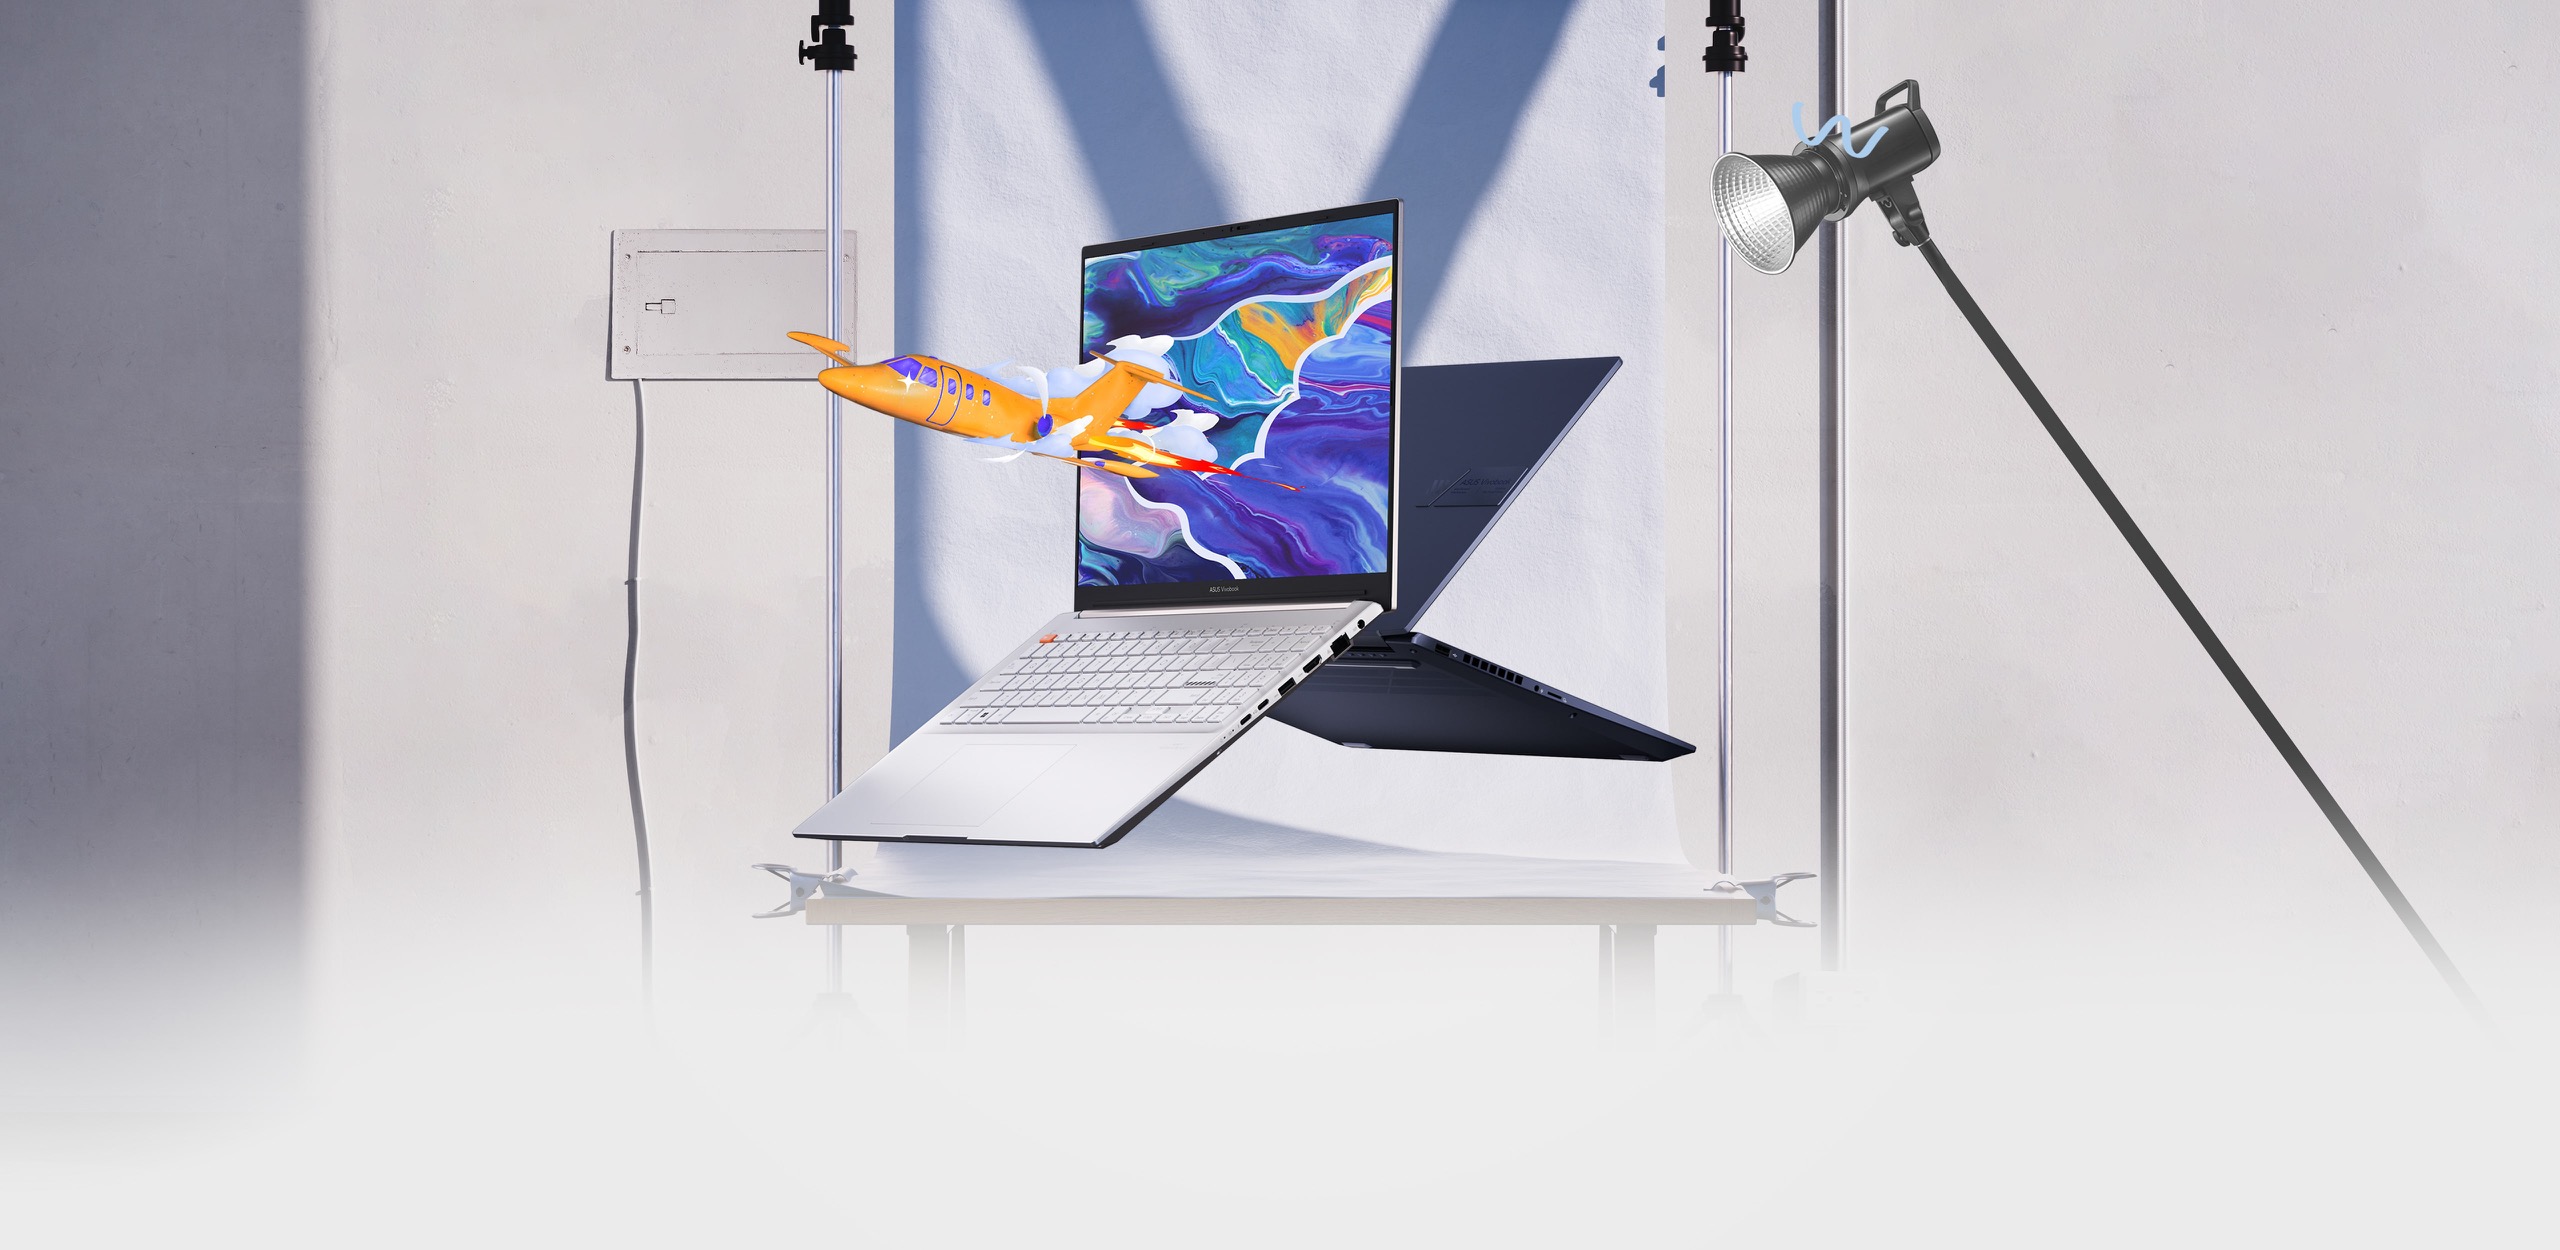 Dwa laptopy Vivobook Pro 16 OLED w widoku z przodu i z tyłu, z których jeden wyświetla na ekranie samolot wyłaniający się z kolorowej grafiki.